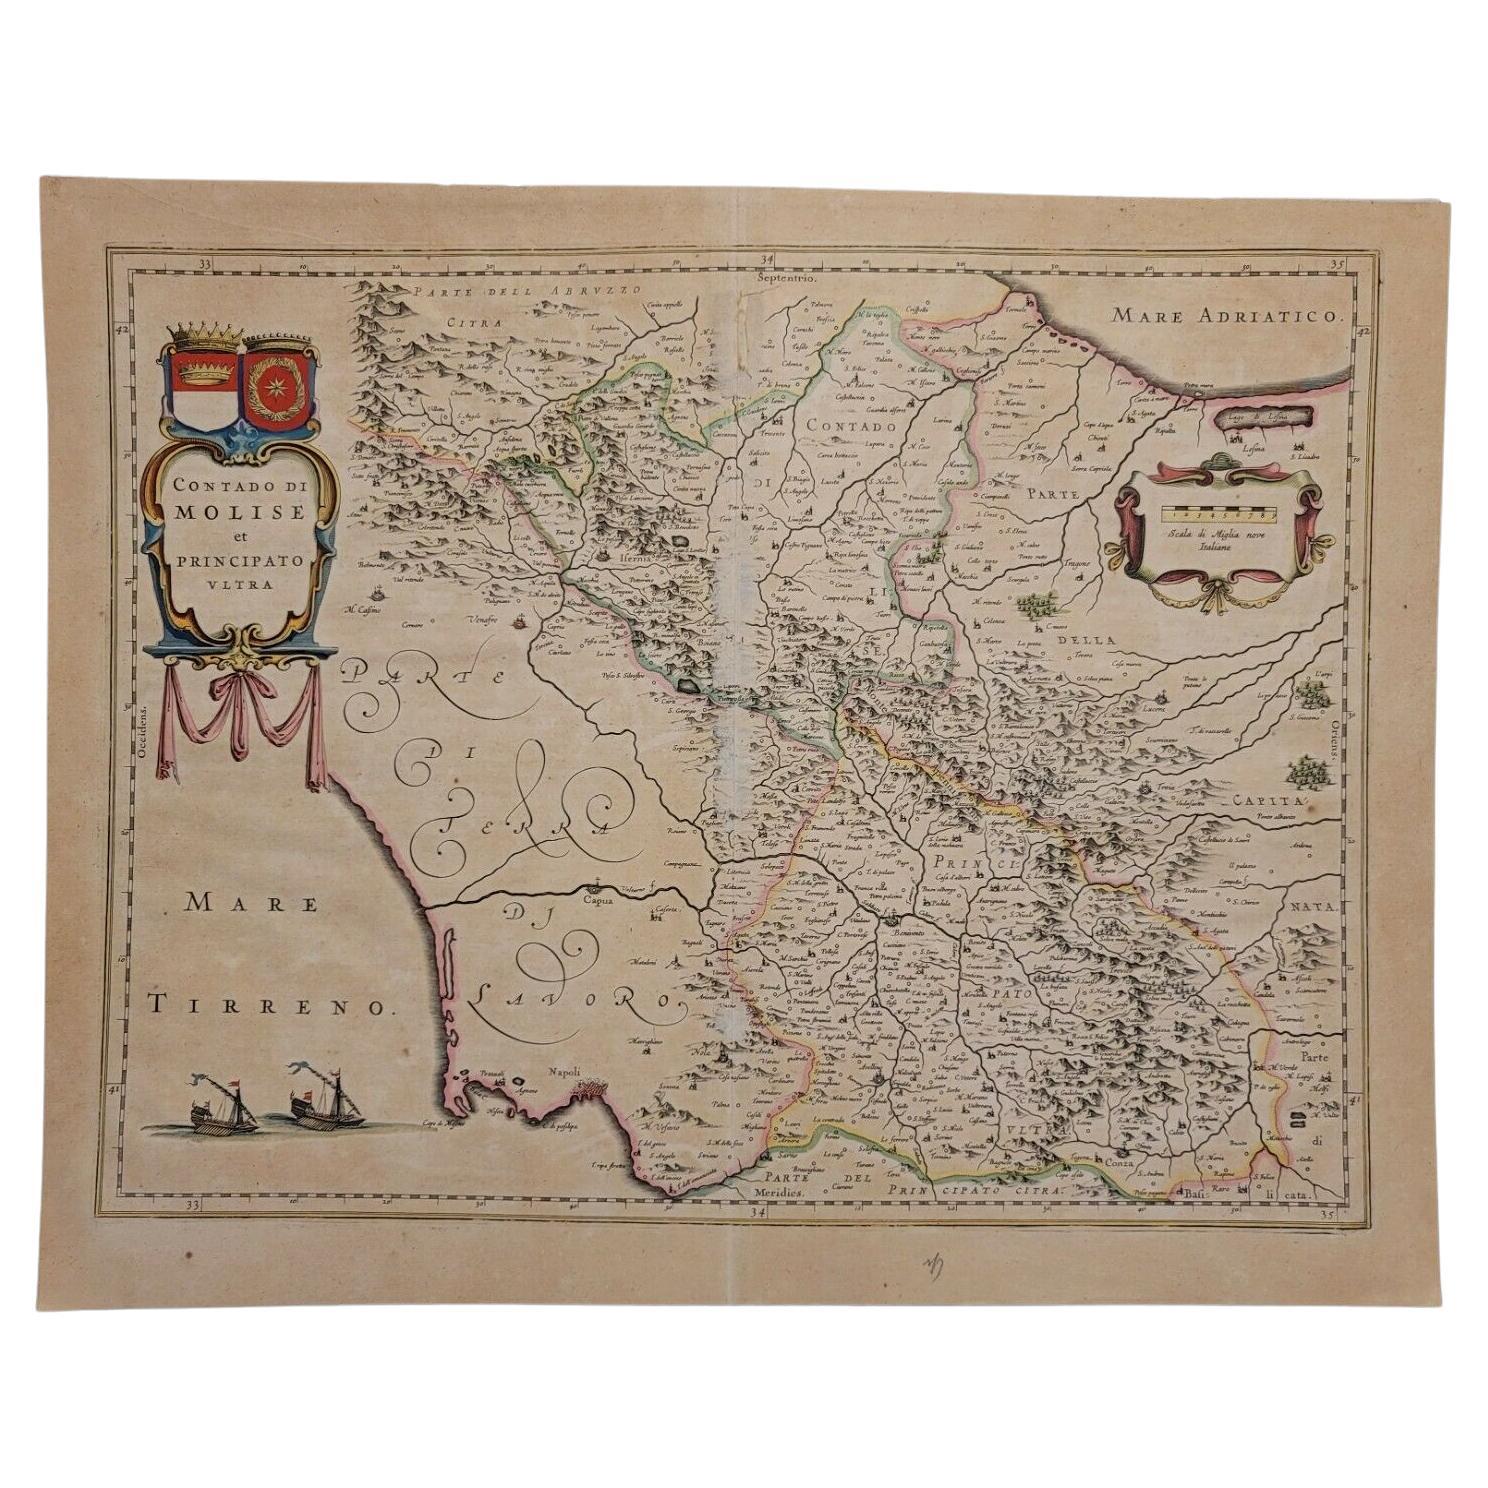 1640 Willem Blaeu Map Entitled "Contado di molise et principato vltra, " Ric.a003 For Sale